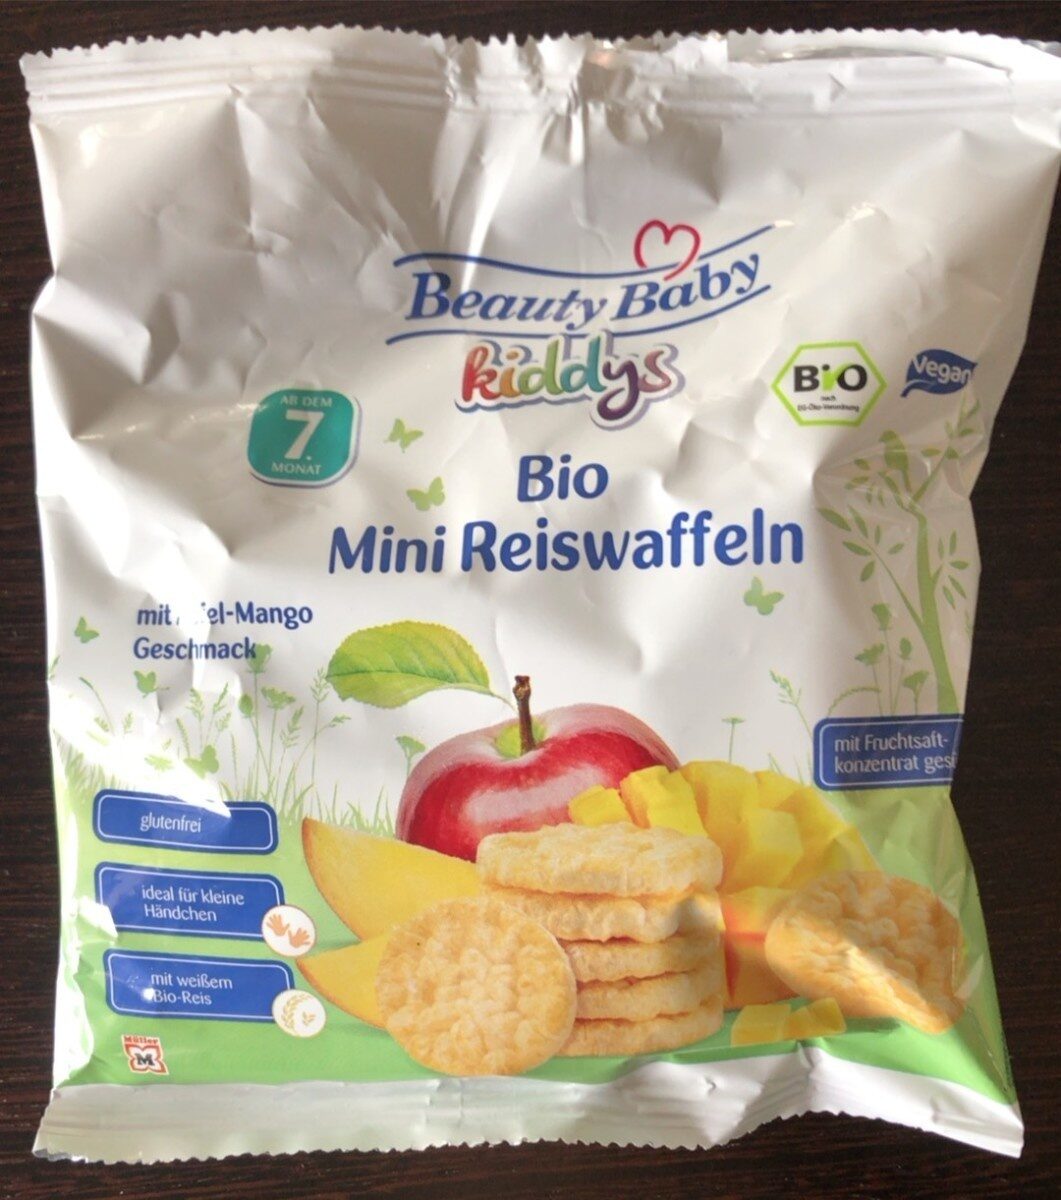 Bio mini galette de riz - Prodotto - fr